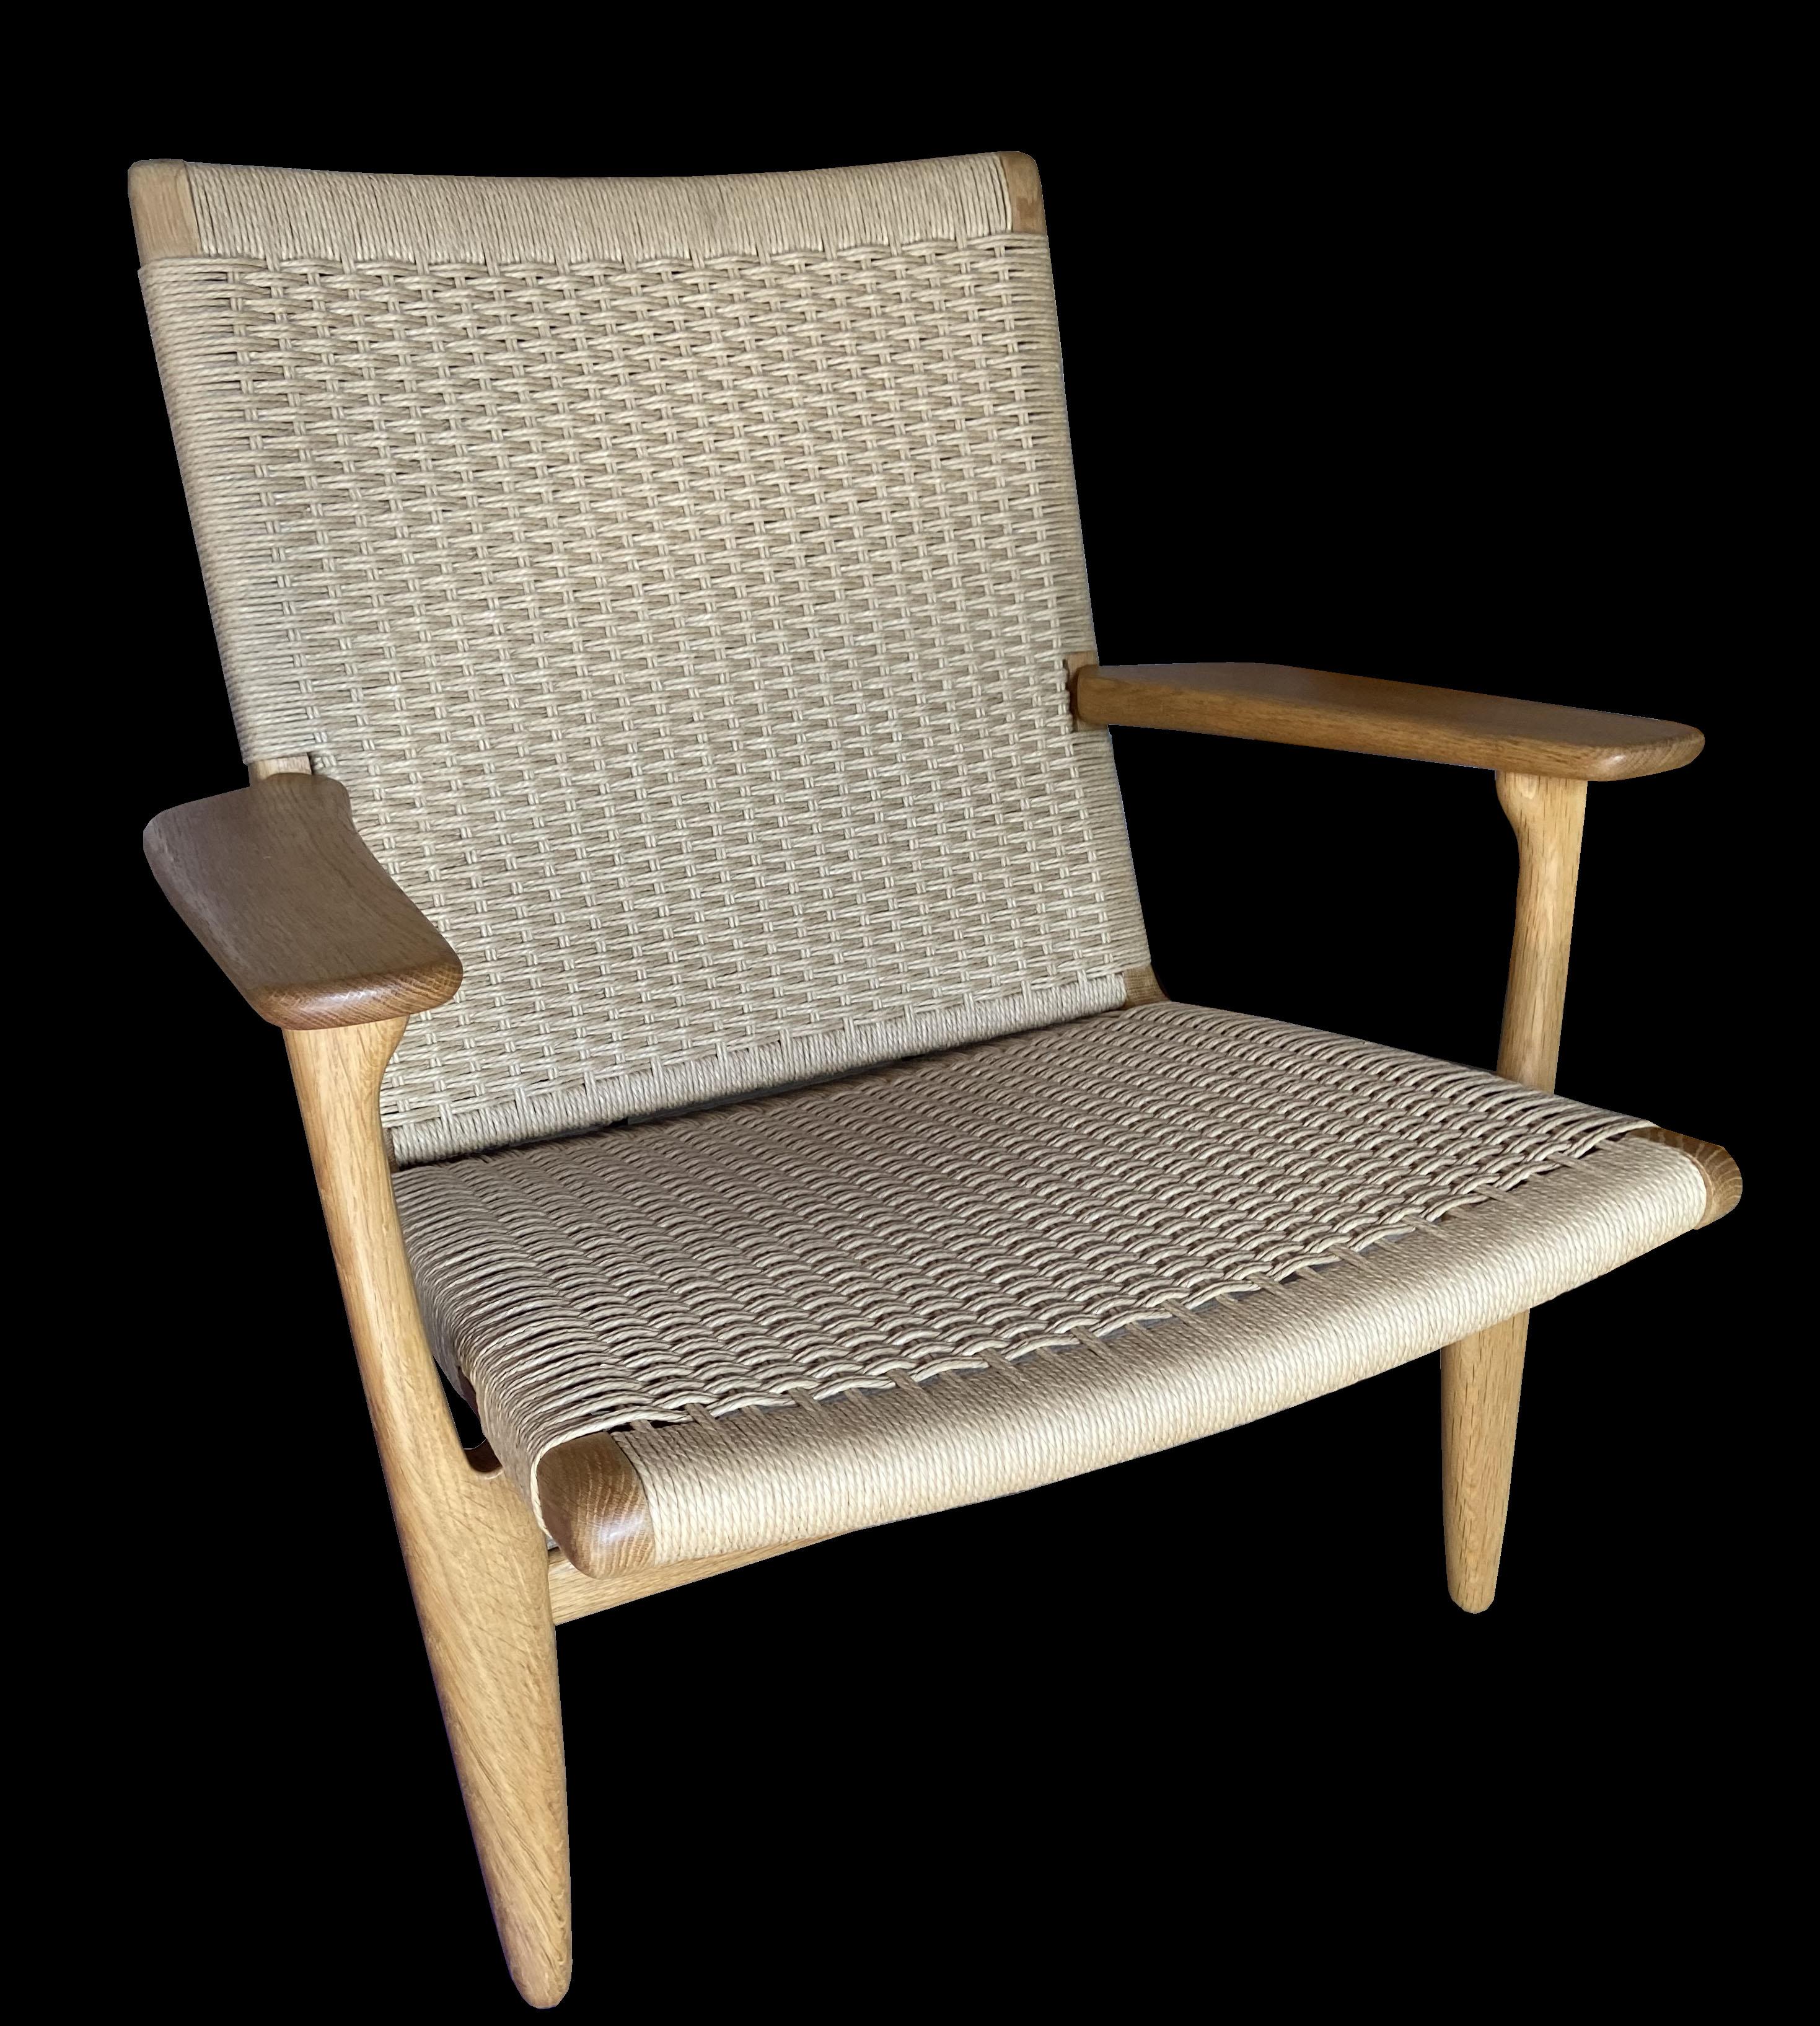 Il s'agit d'une chaise originale dans un état exceptionnel. Tout le Papercord est en bon état, sans taches ni parties effilochées ou cassées, probablement le meilleur que nous ayons eu en 30 ans !
Le chêne a une belle patine dorée, et si j'en